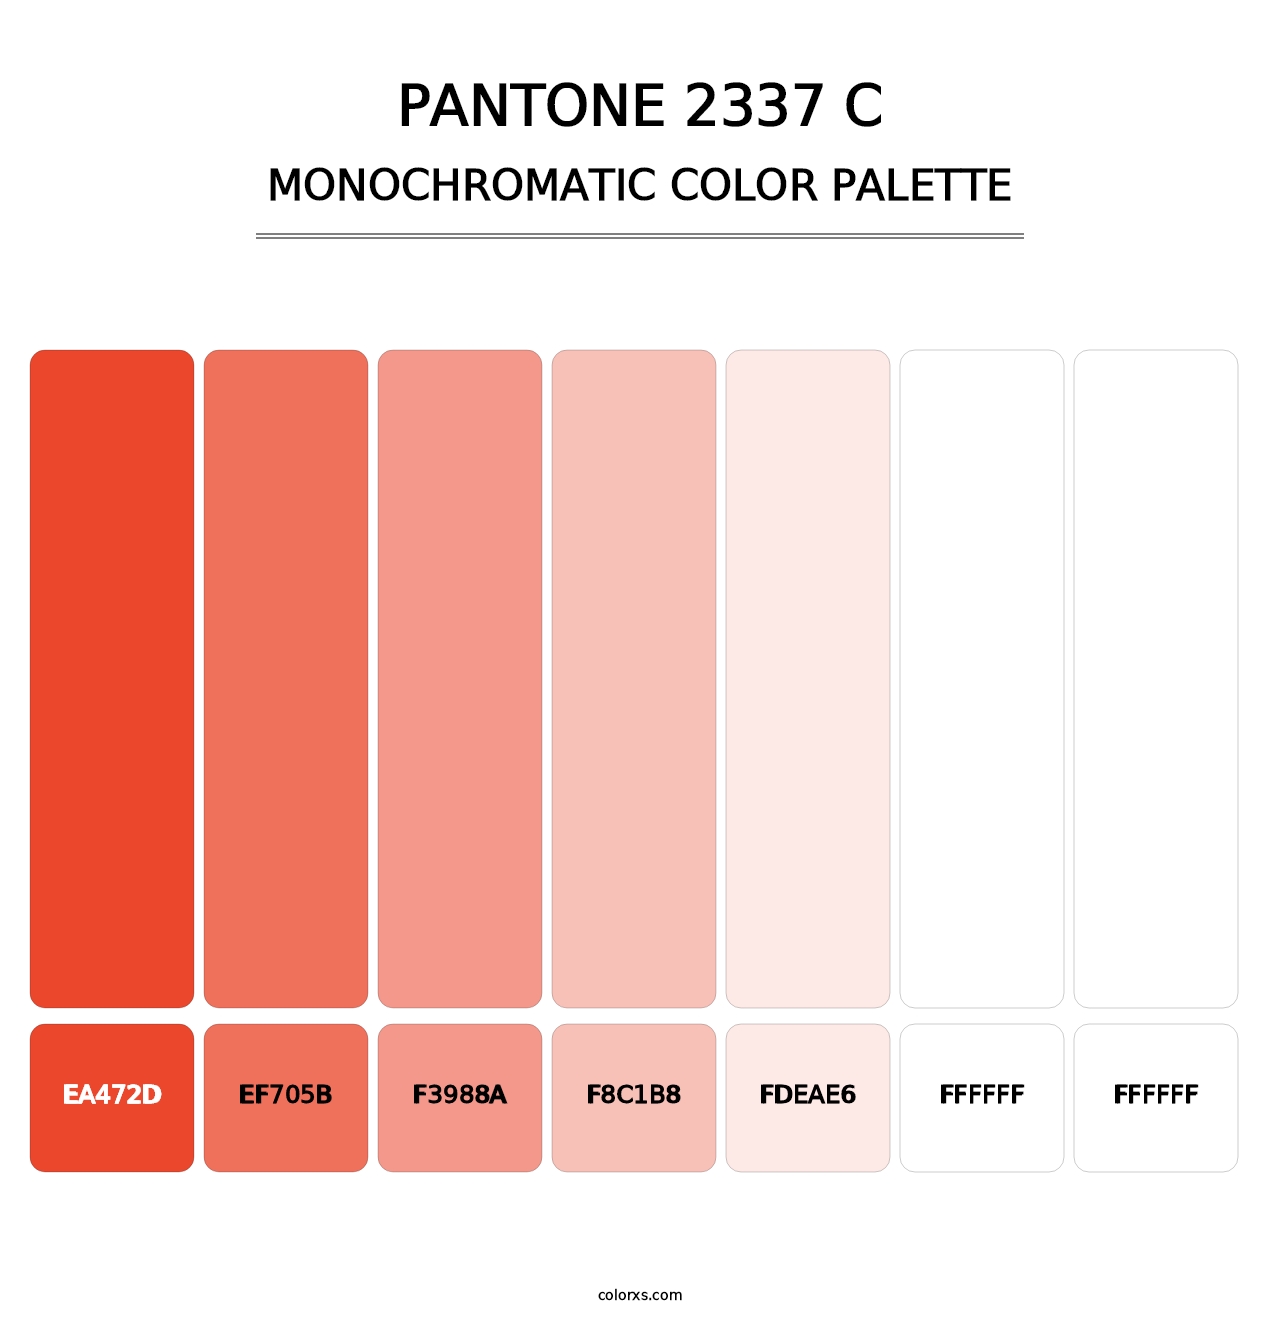 PANTONE 2337 C - Monochromatic Color Palette